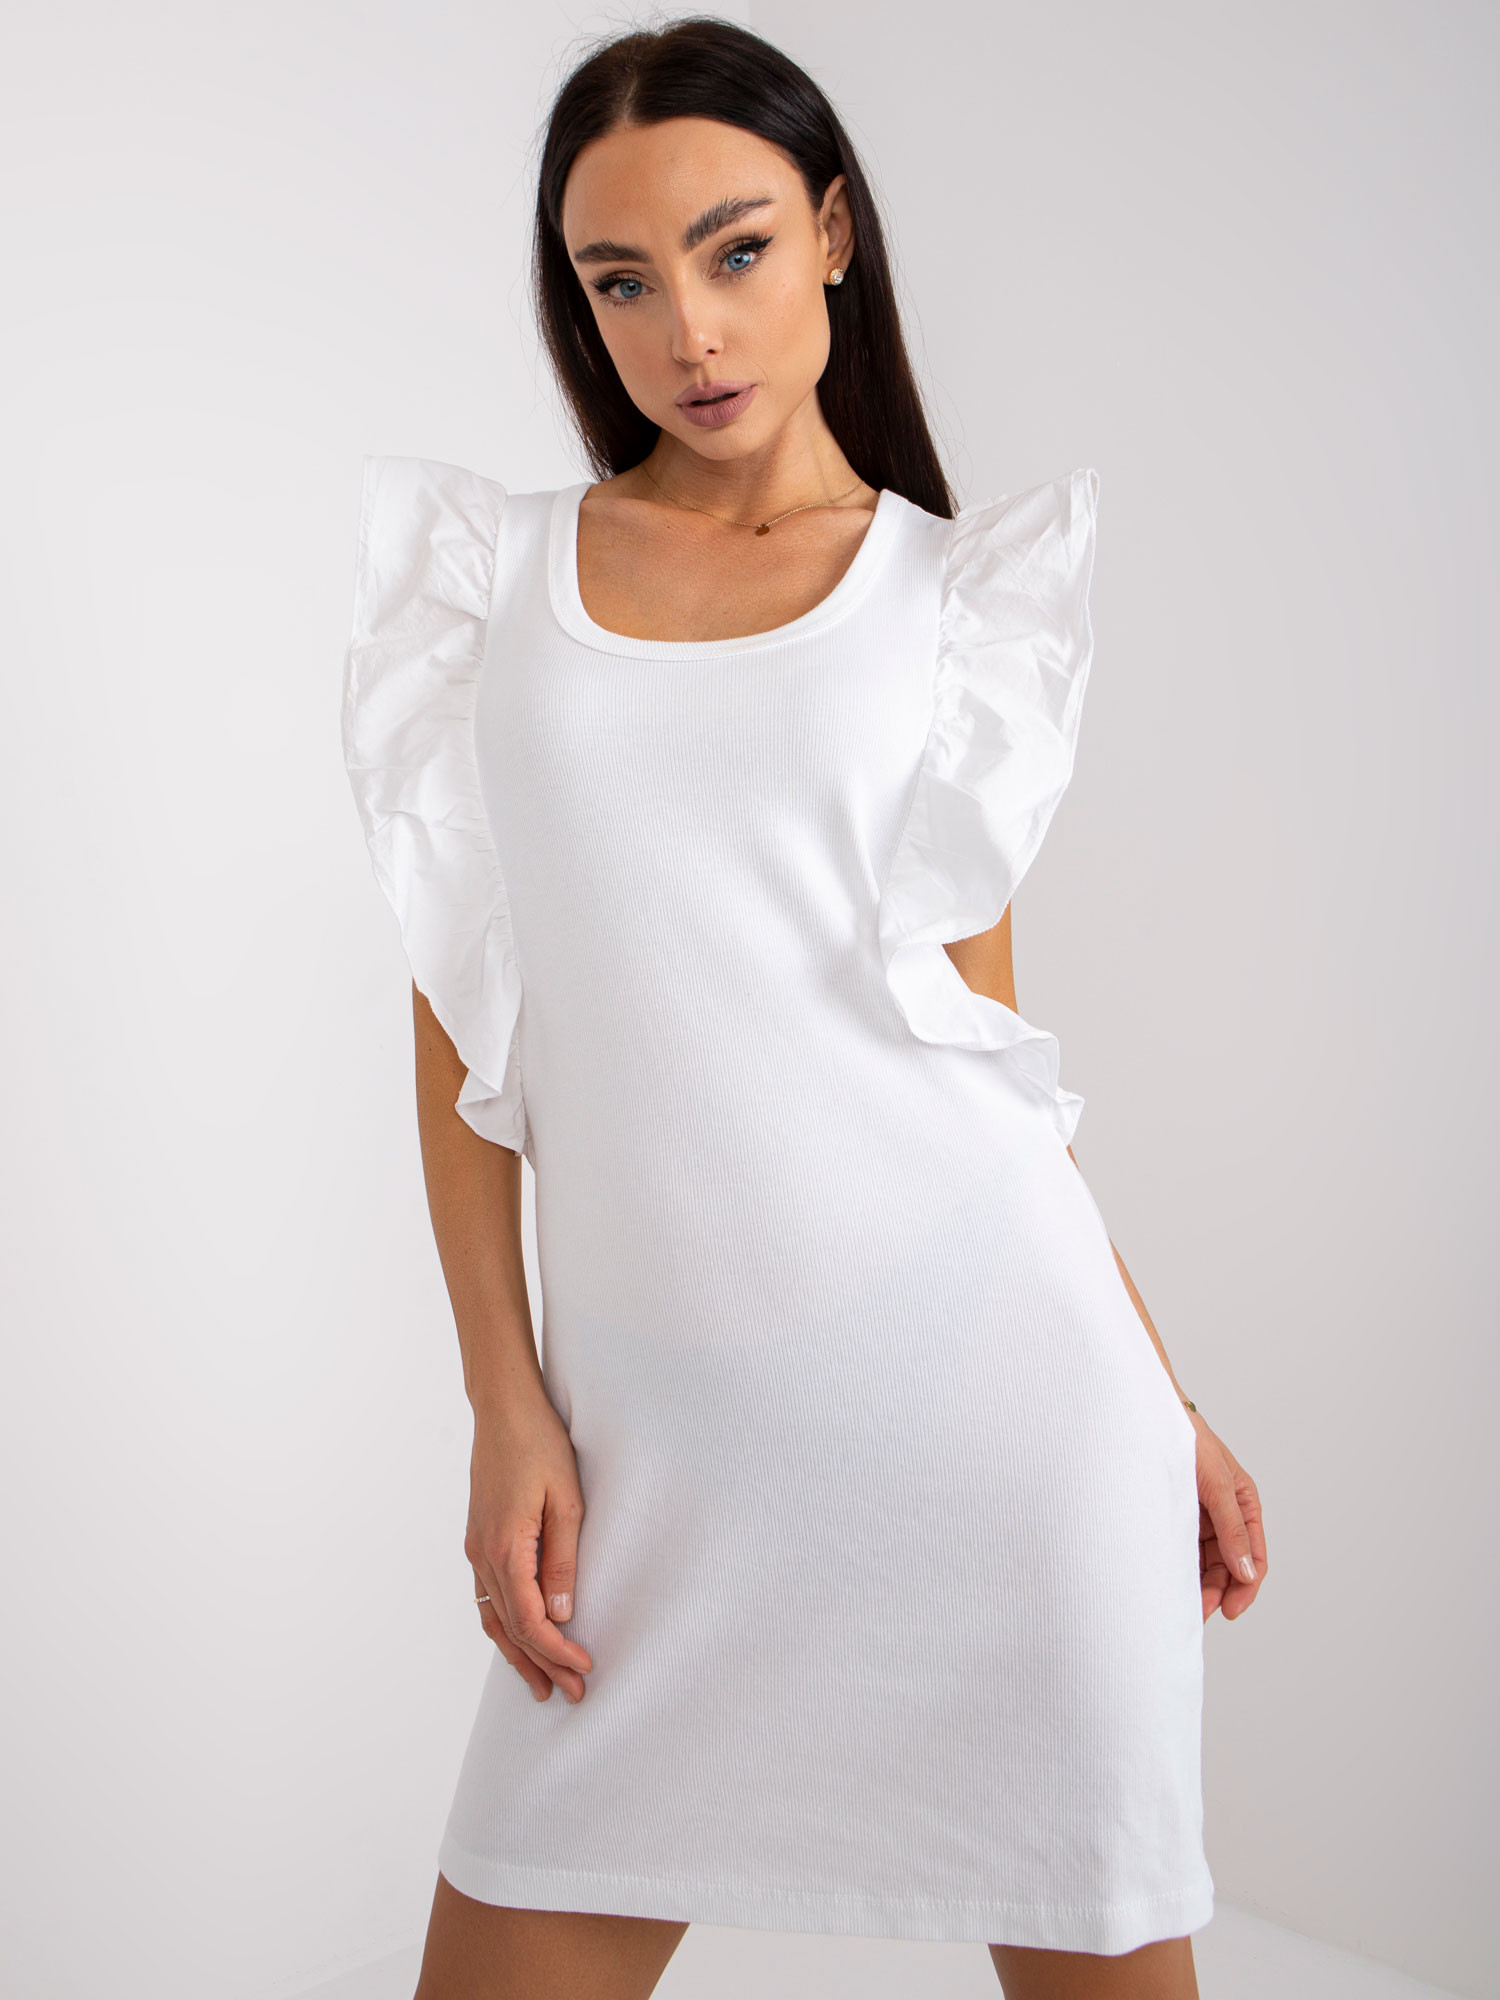 Šaty EM SK F365.22 bílých jedna velikost